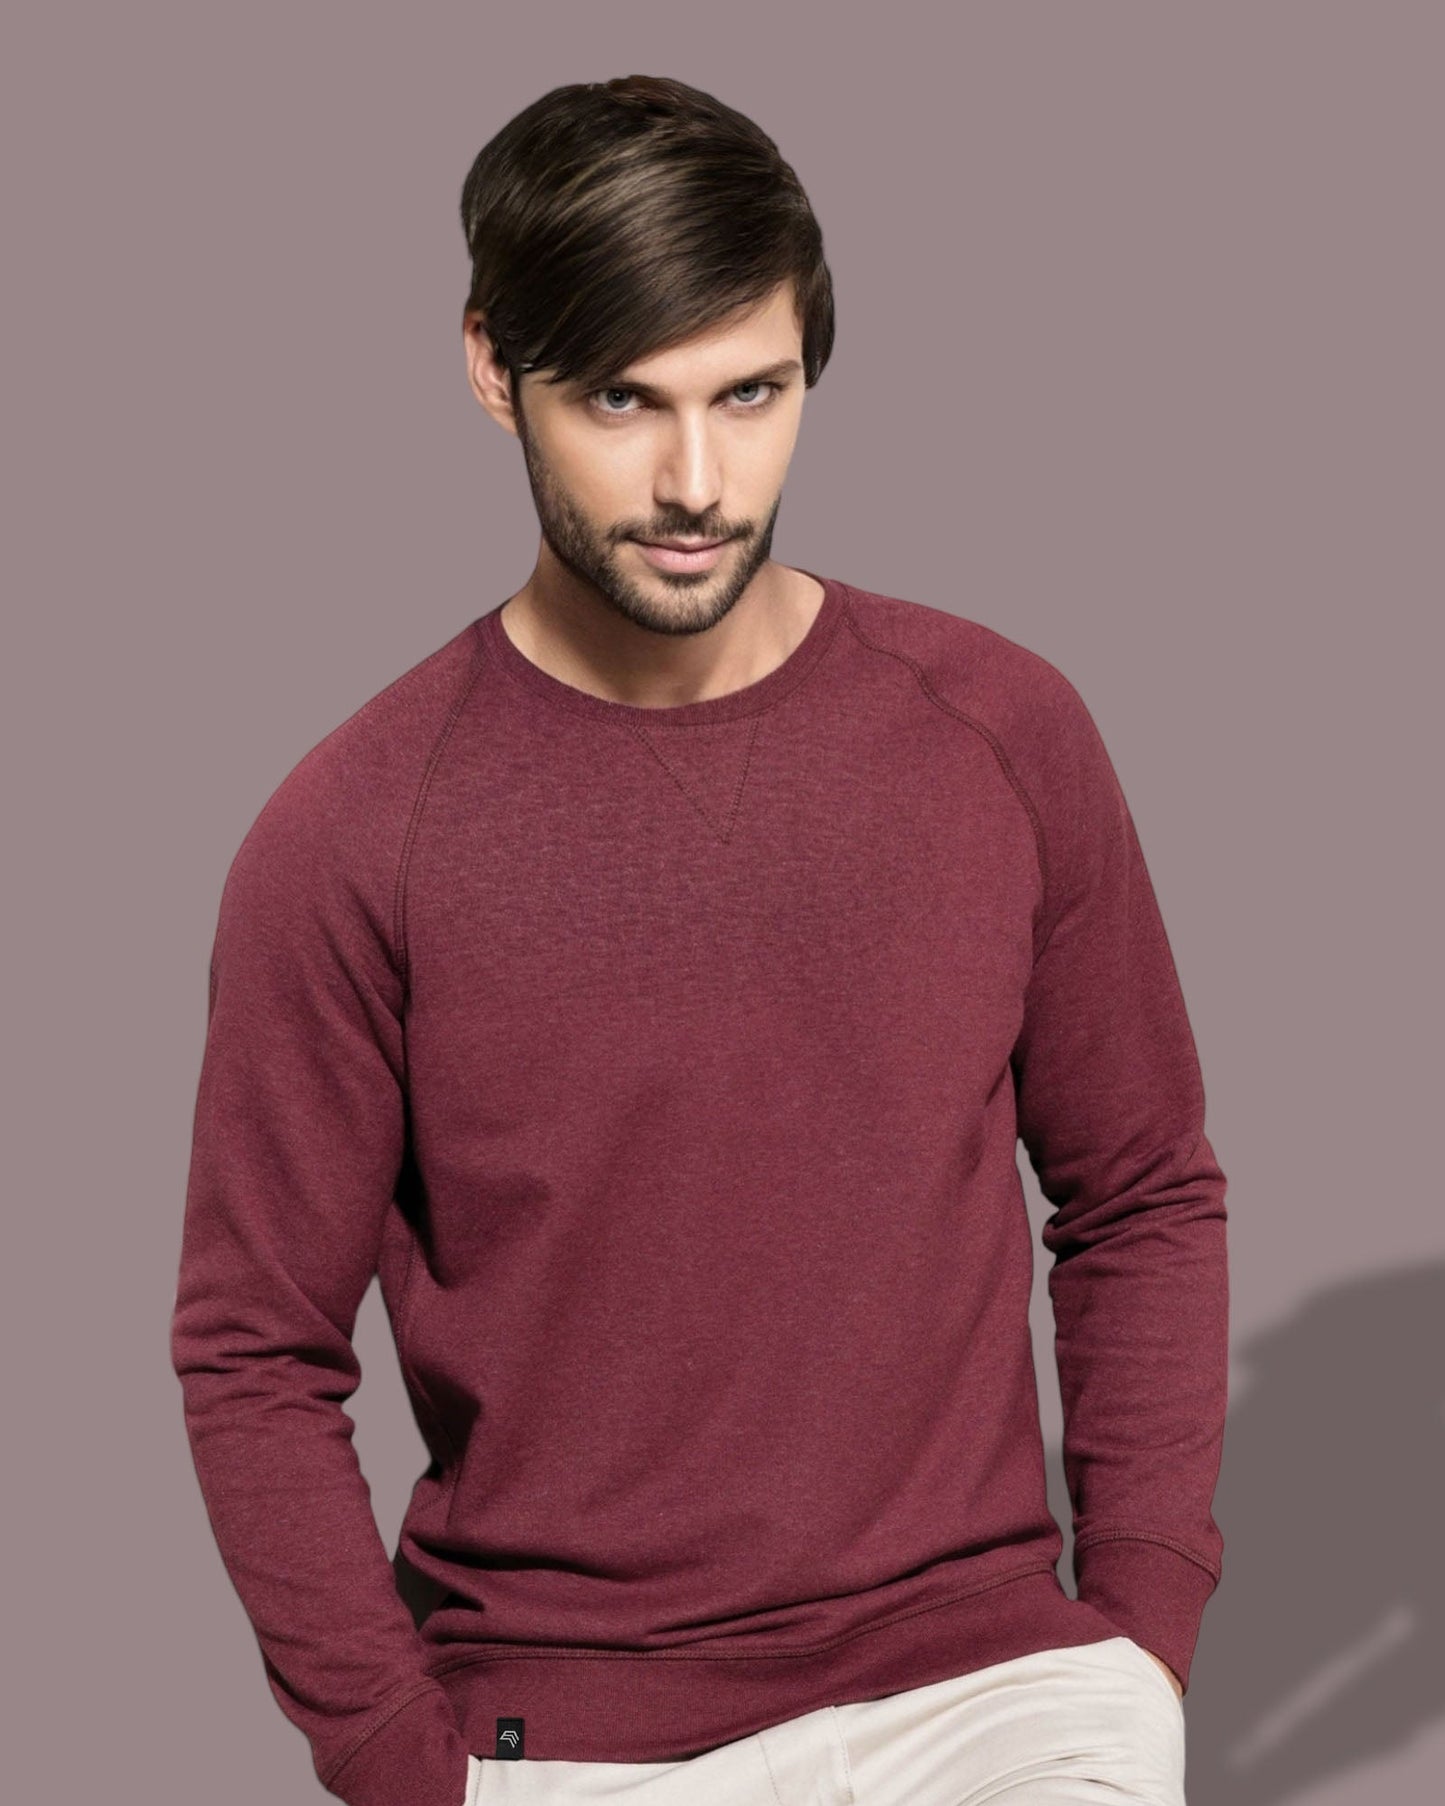 KRB K480 ― Bio-Baumwolle Sweatshirt - Sage Grün